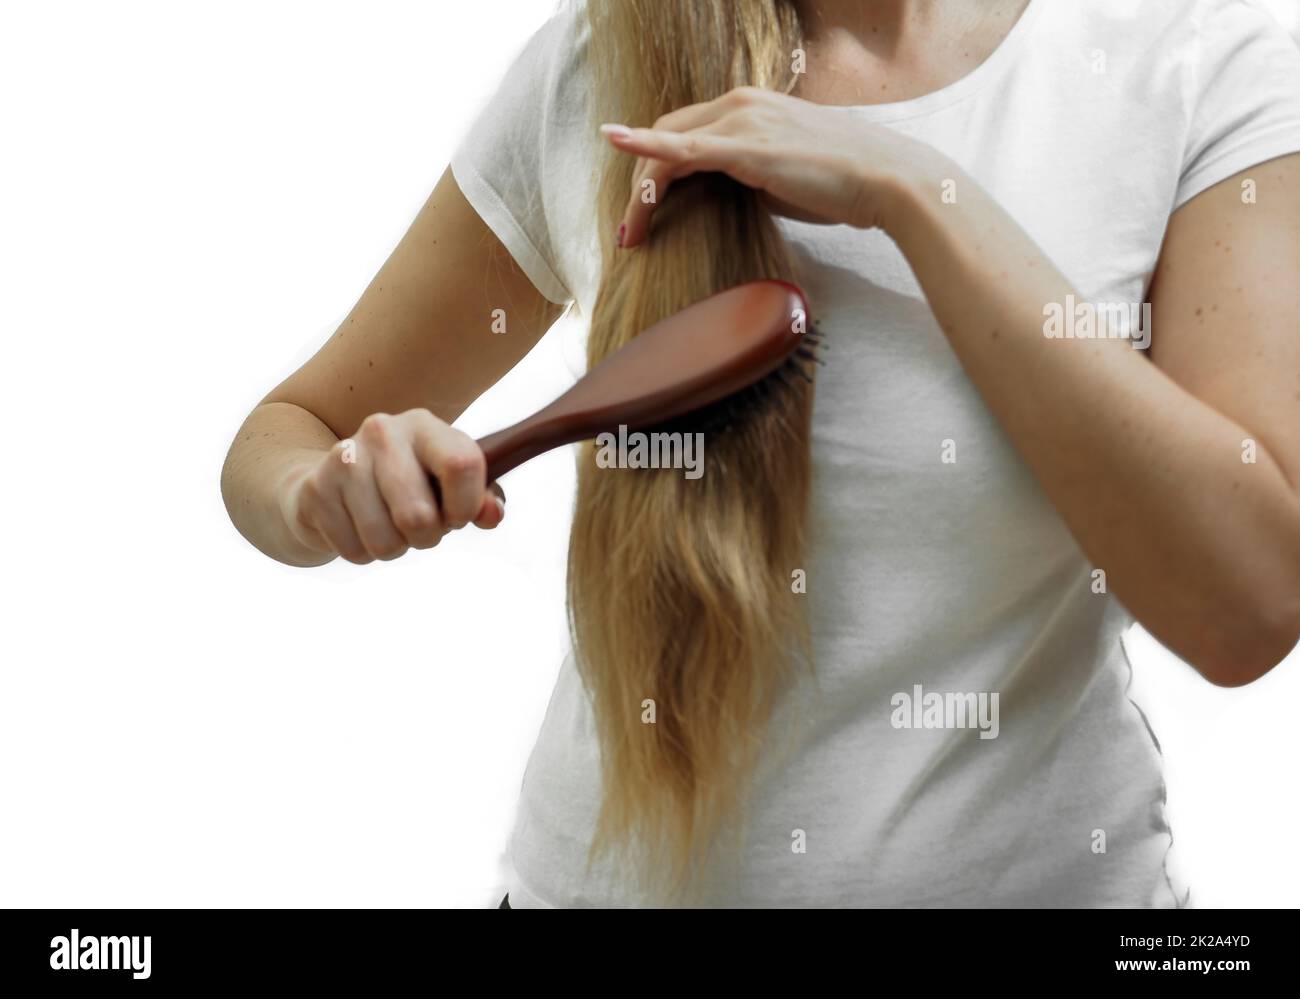 Ein Mädchen mit langen blonden Haaren kämmt sie mit einem Kamm. Das Problem von Haarausfall und Haarausfall, Haarpflege Stockfoto